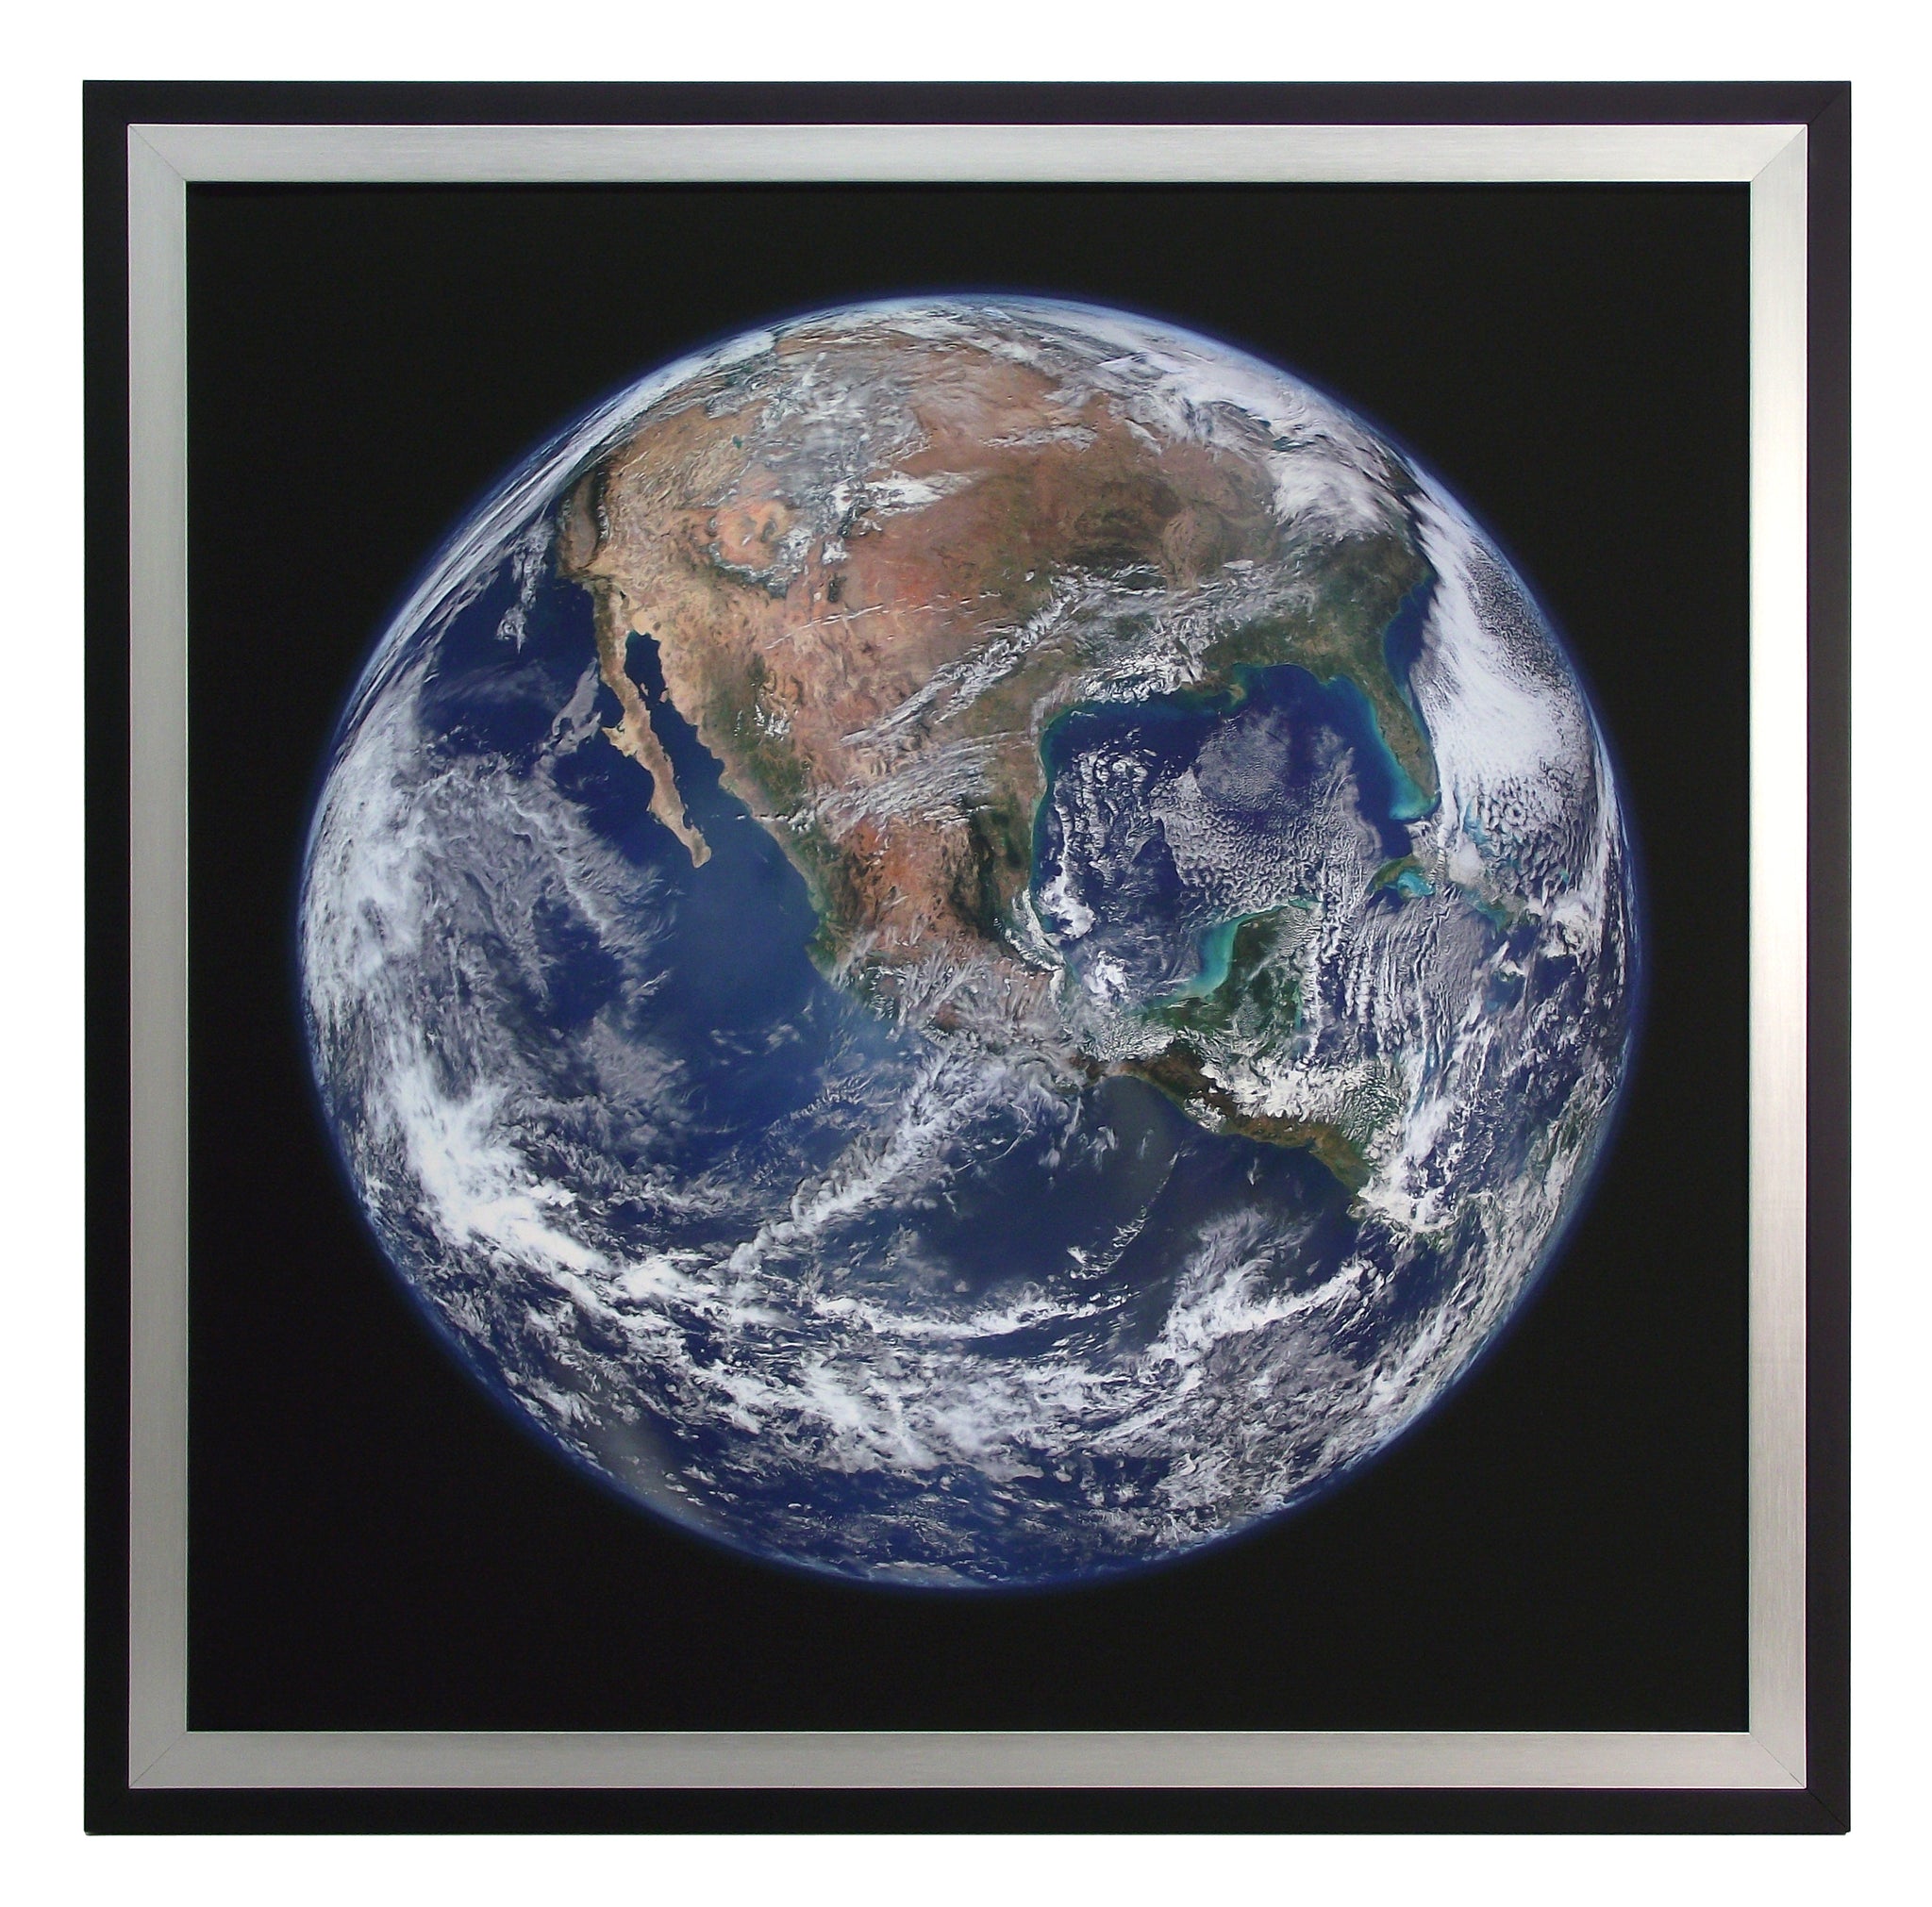 Obraz - Ziemia z kosmosu, kolorowa fotografia NASA - reprodukcja 1AP3243 w ramie 70x70 cm